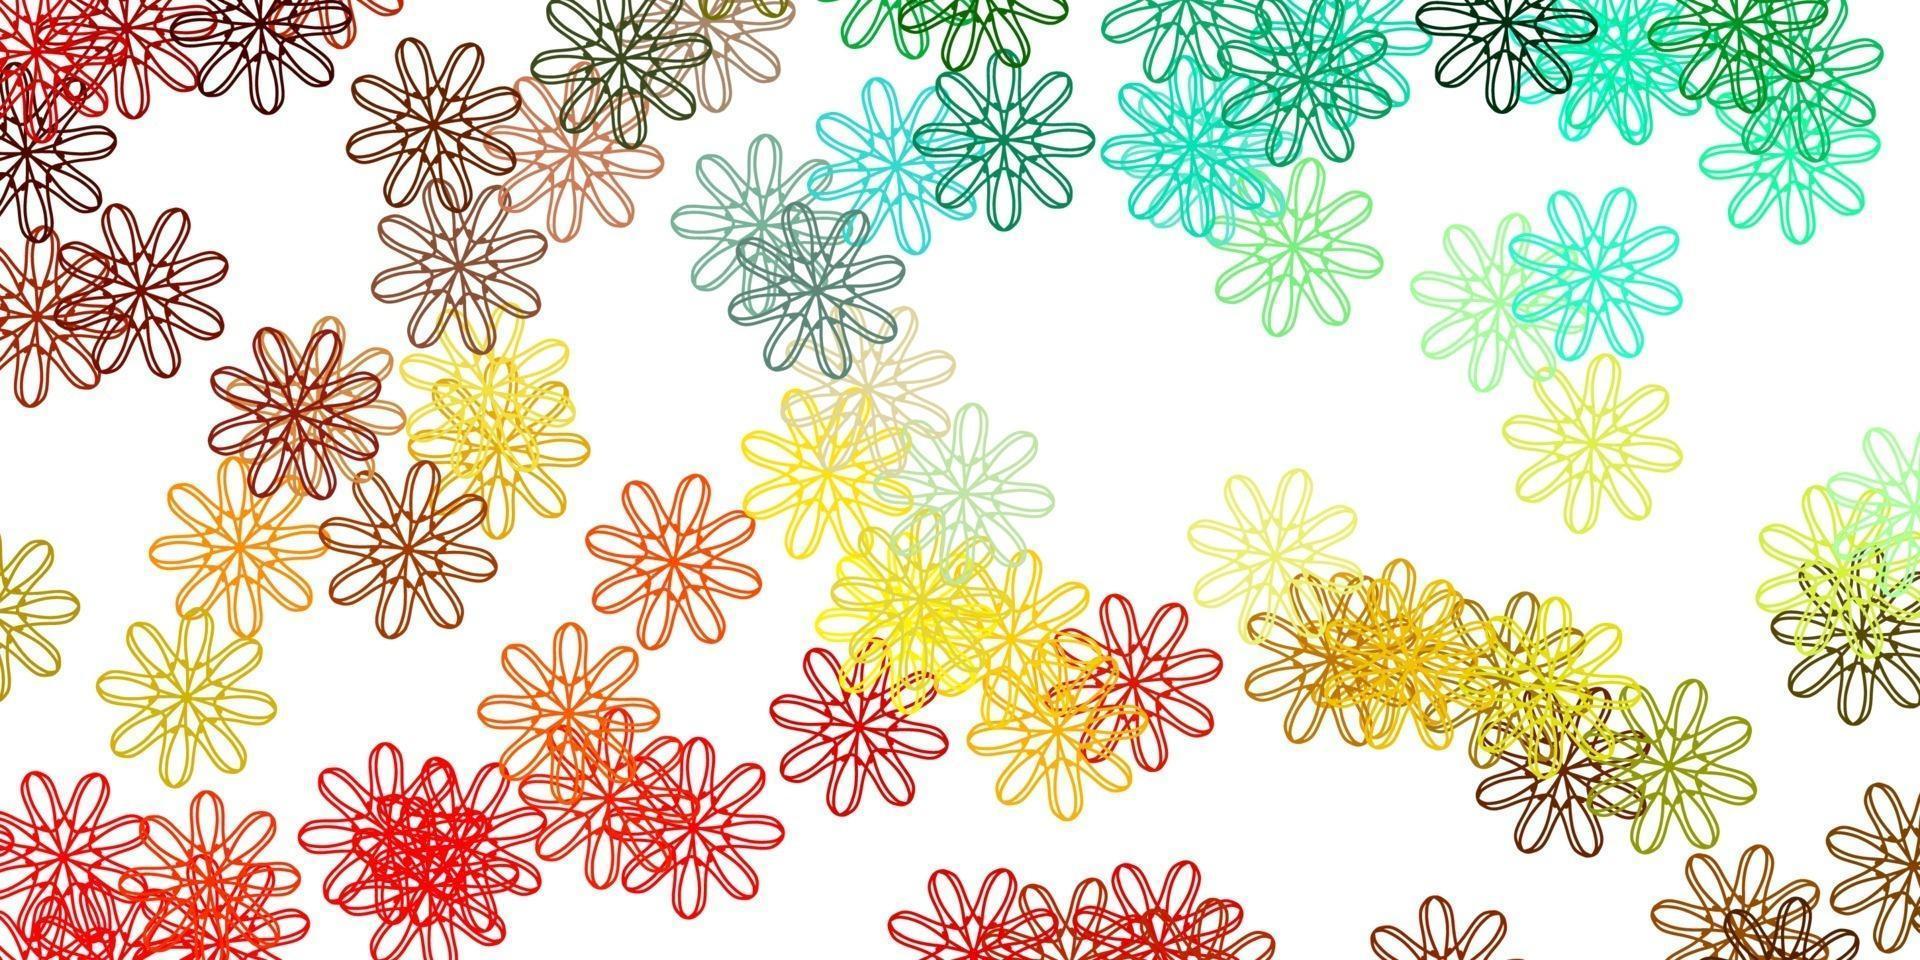 motif de doodle de vecteur multicolore clair avec des fleurs.